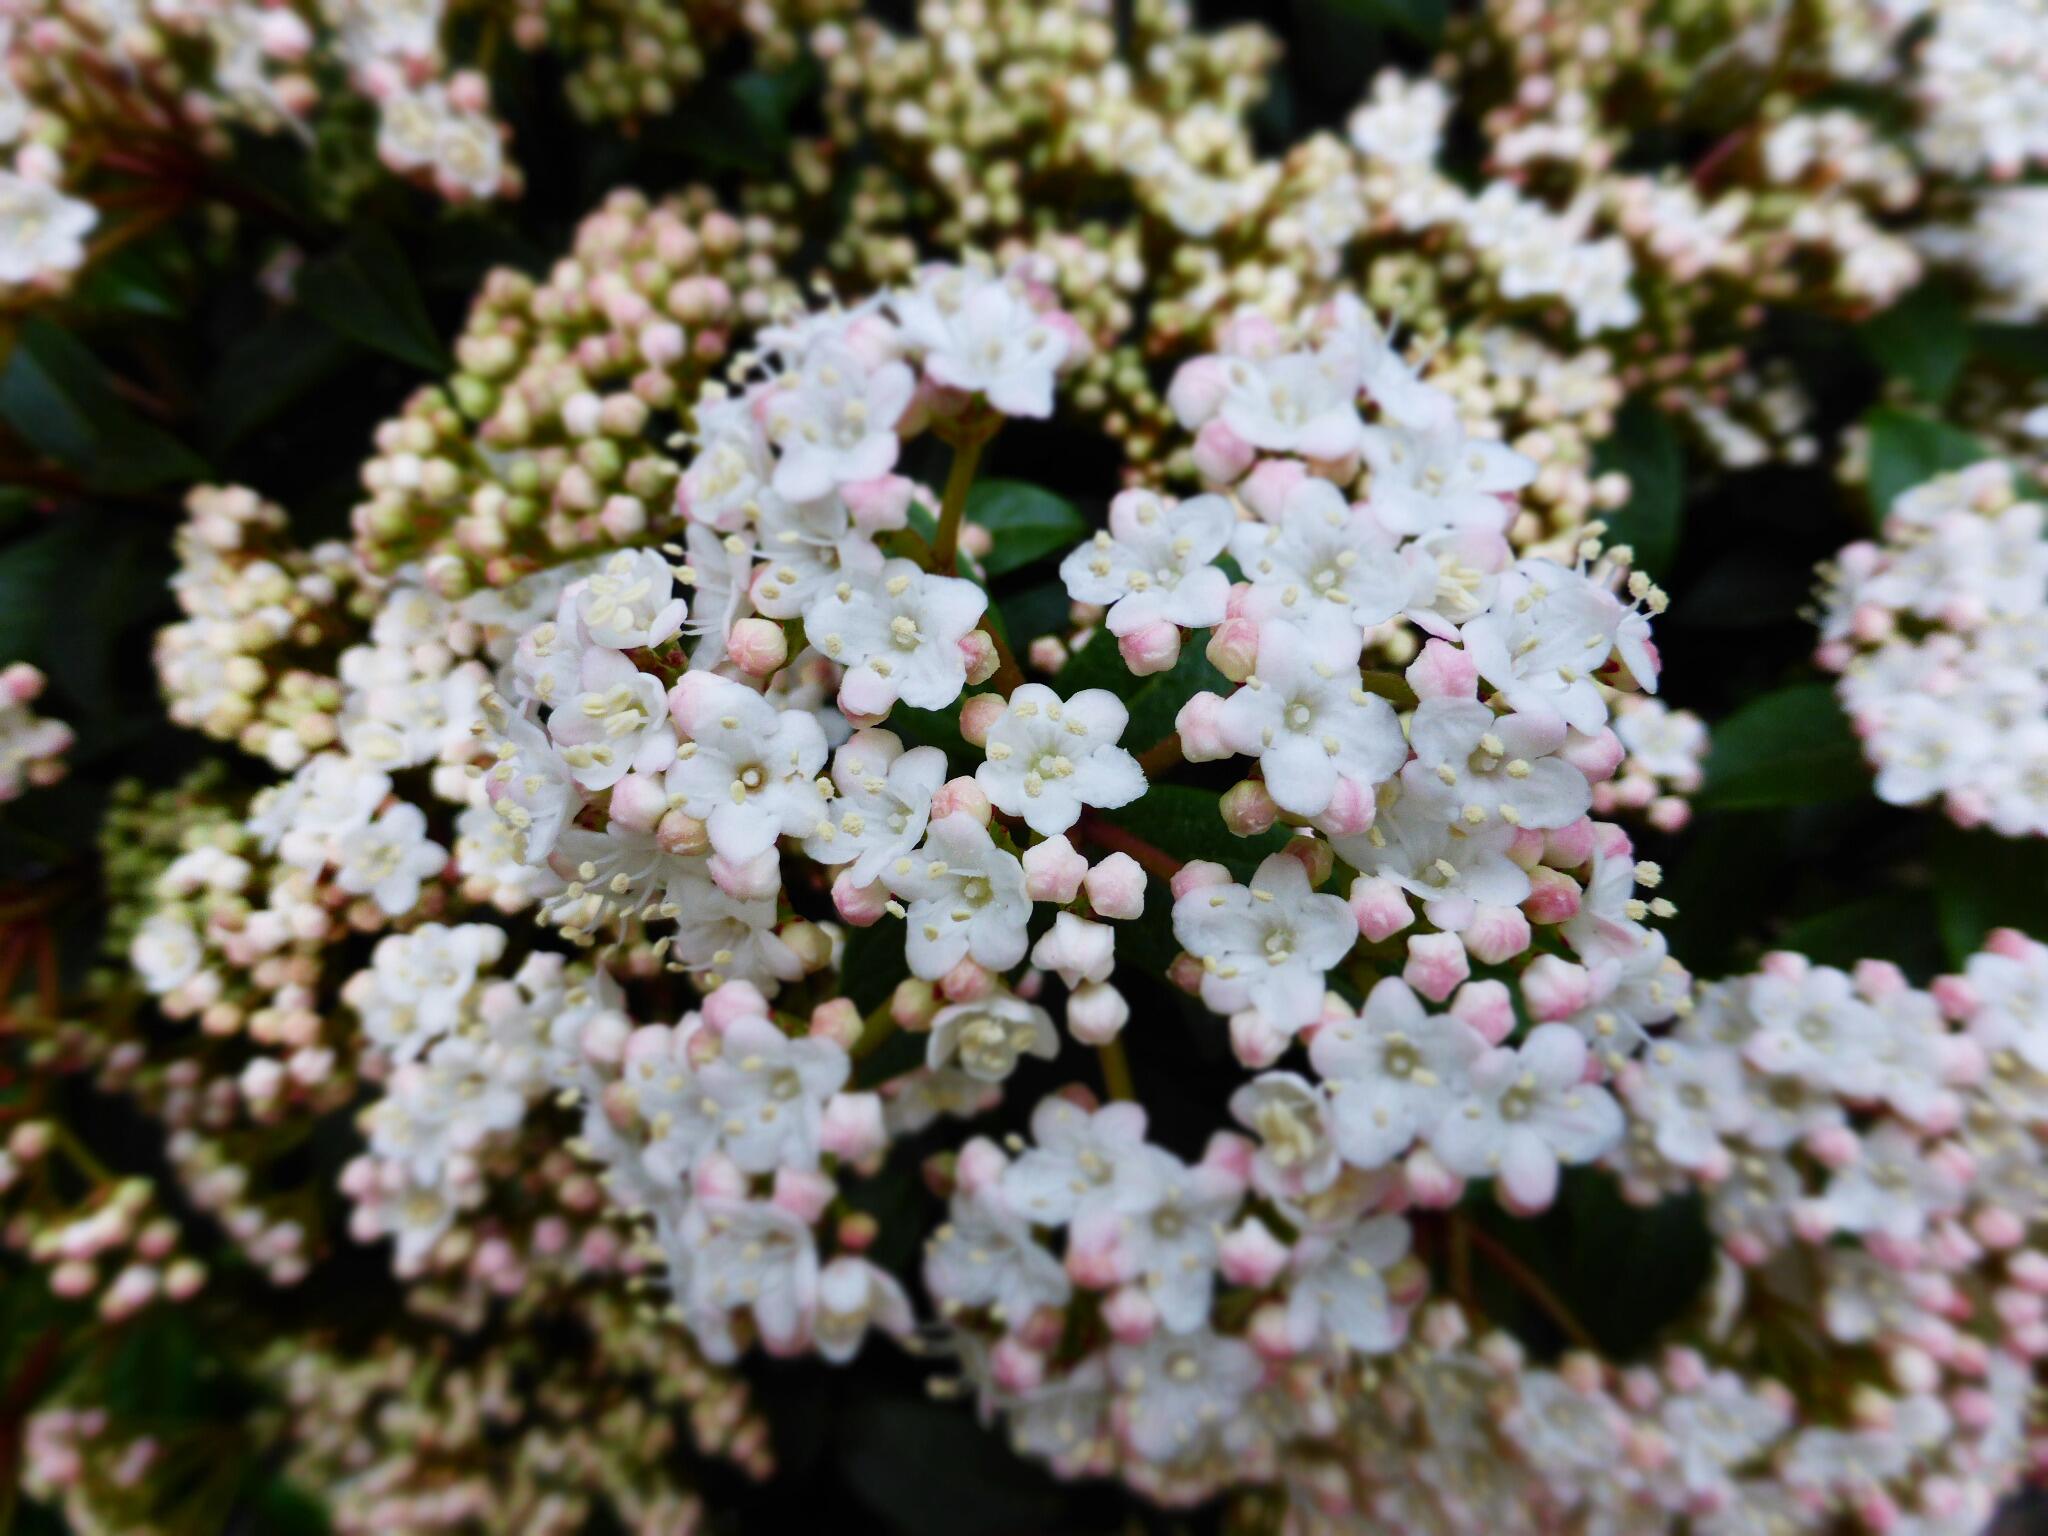 Hiro ピンクの蕾から白い小花をたくさん ビバーナム ティヌス咲きました グリーンっぽい春の香りがほんの り 花言葉は 茶目っ気 など 素敵な春の午後を Http T Co Ft1hic7kpz Twitter